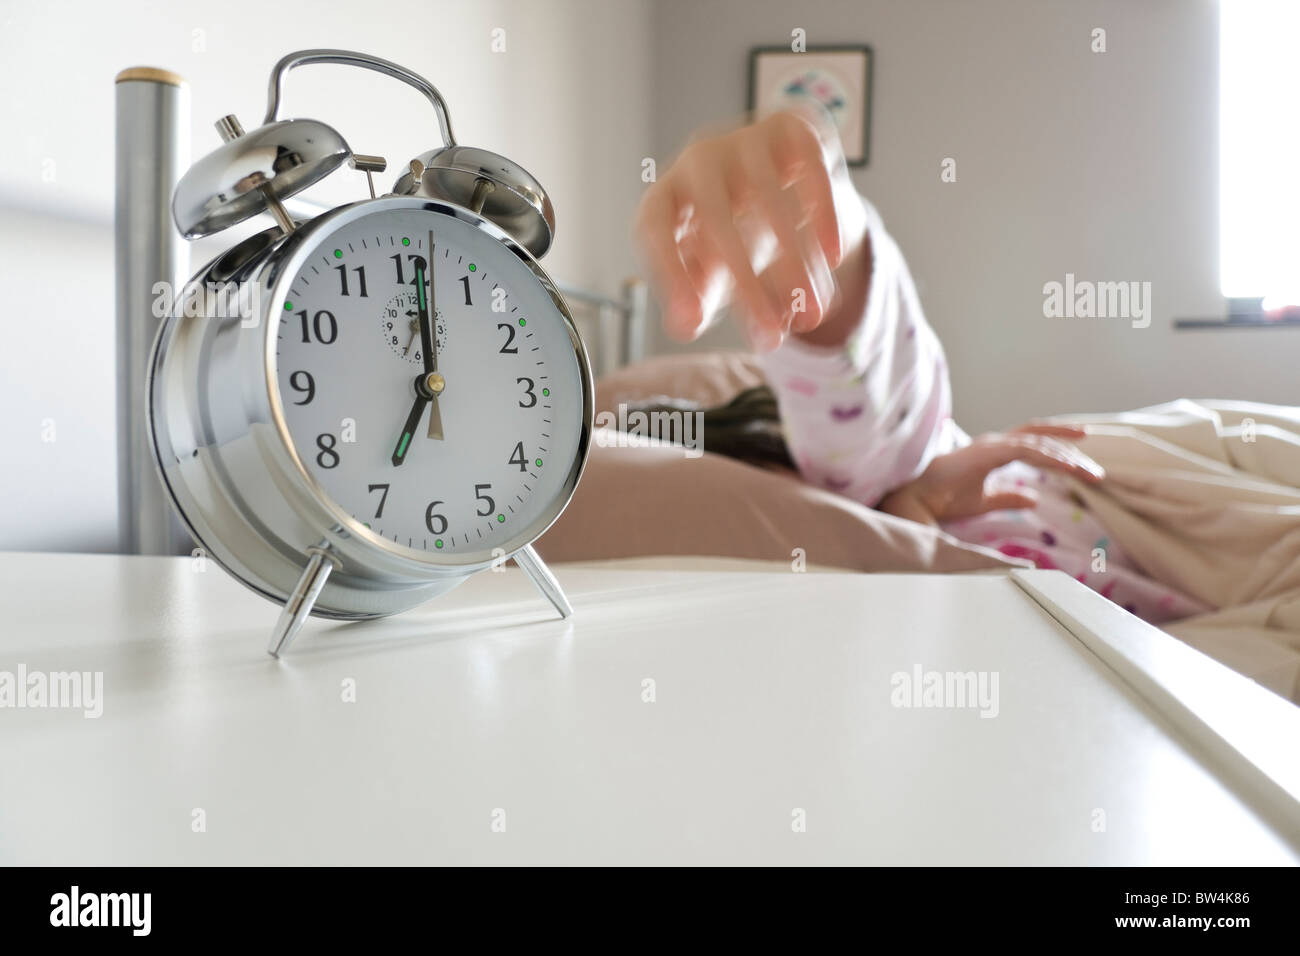 Turning off alarm clock Stock Photo